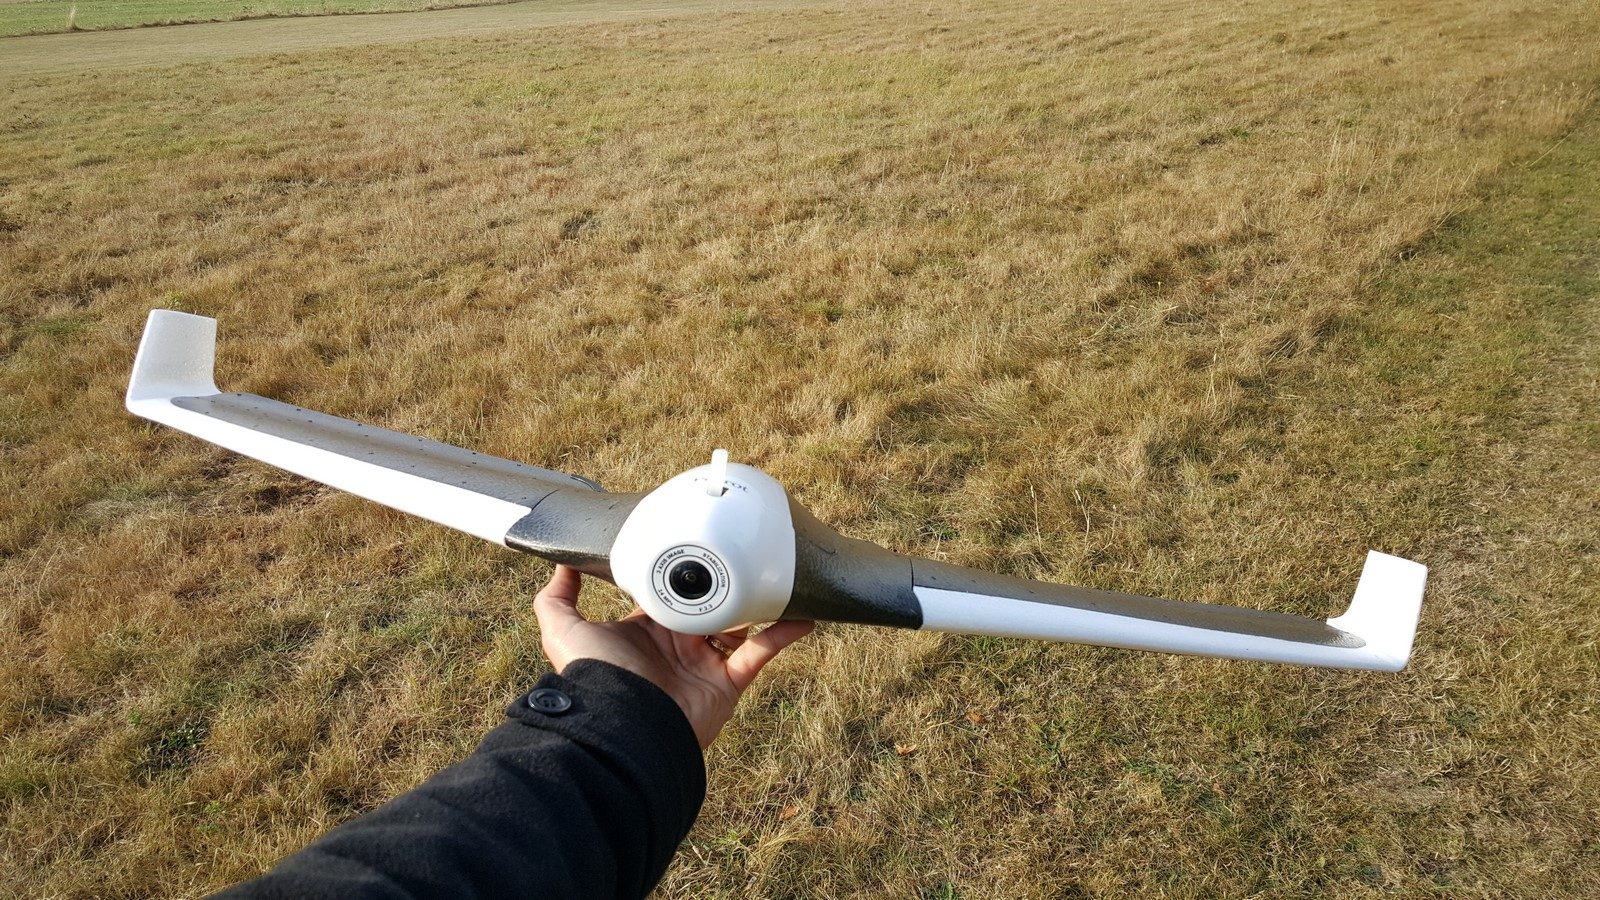 On a testé… L'Anafi FPV, le drone de Parrot pour voler « en immersion »